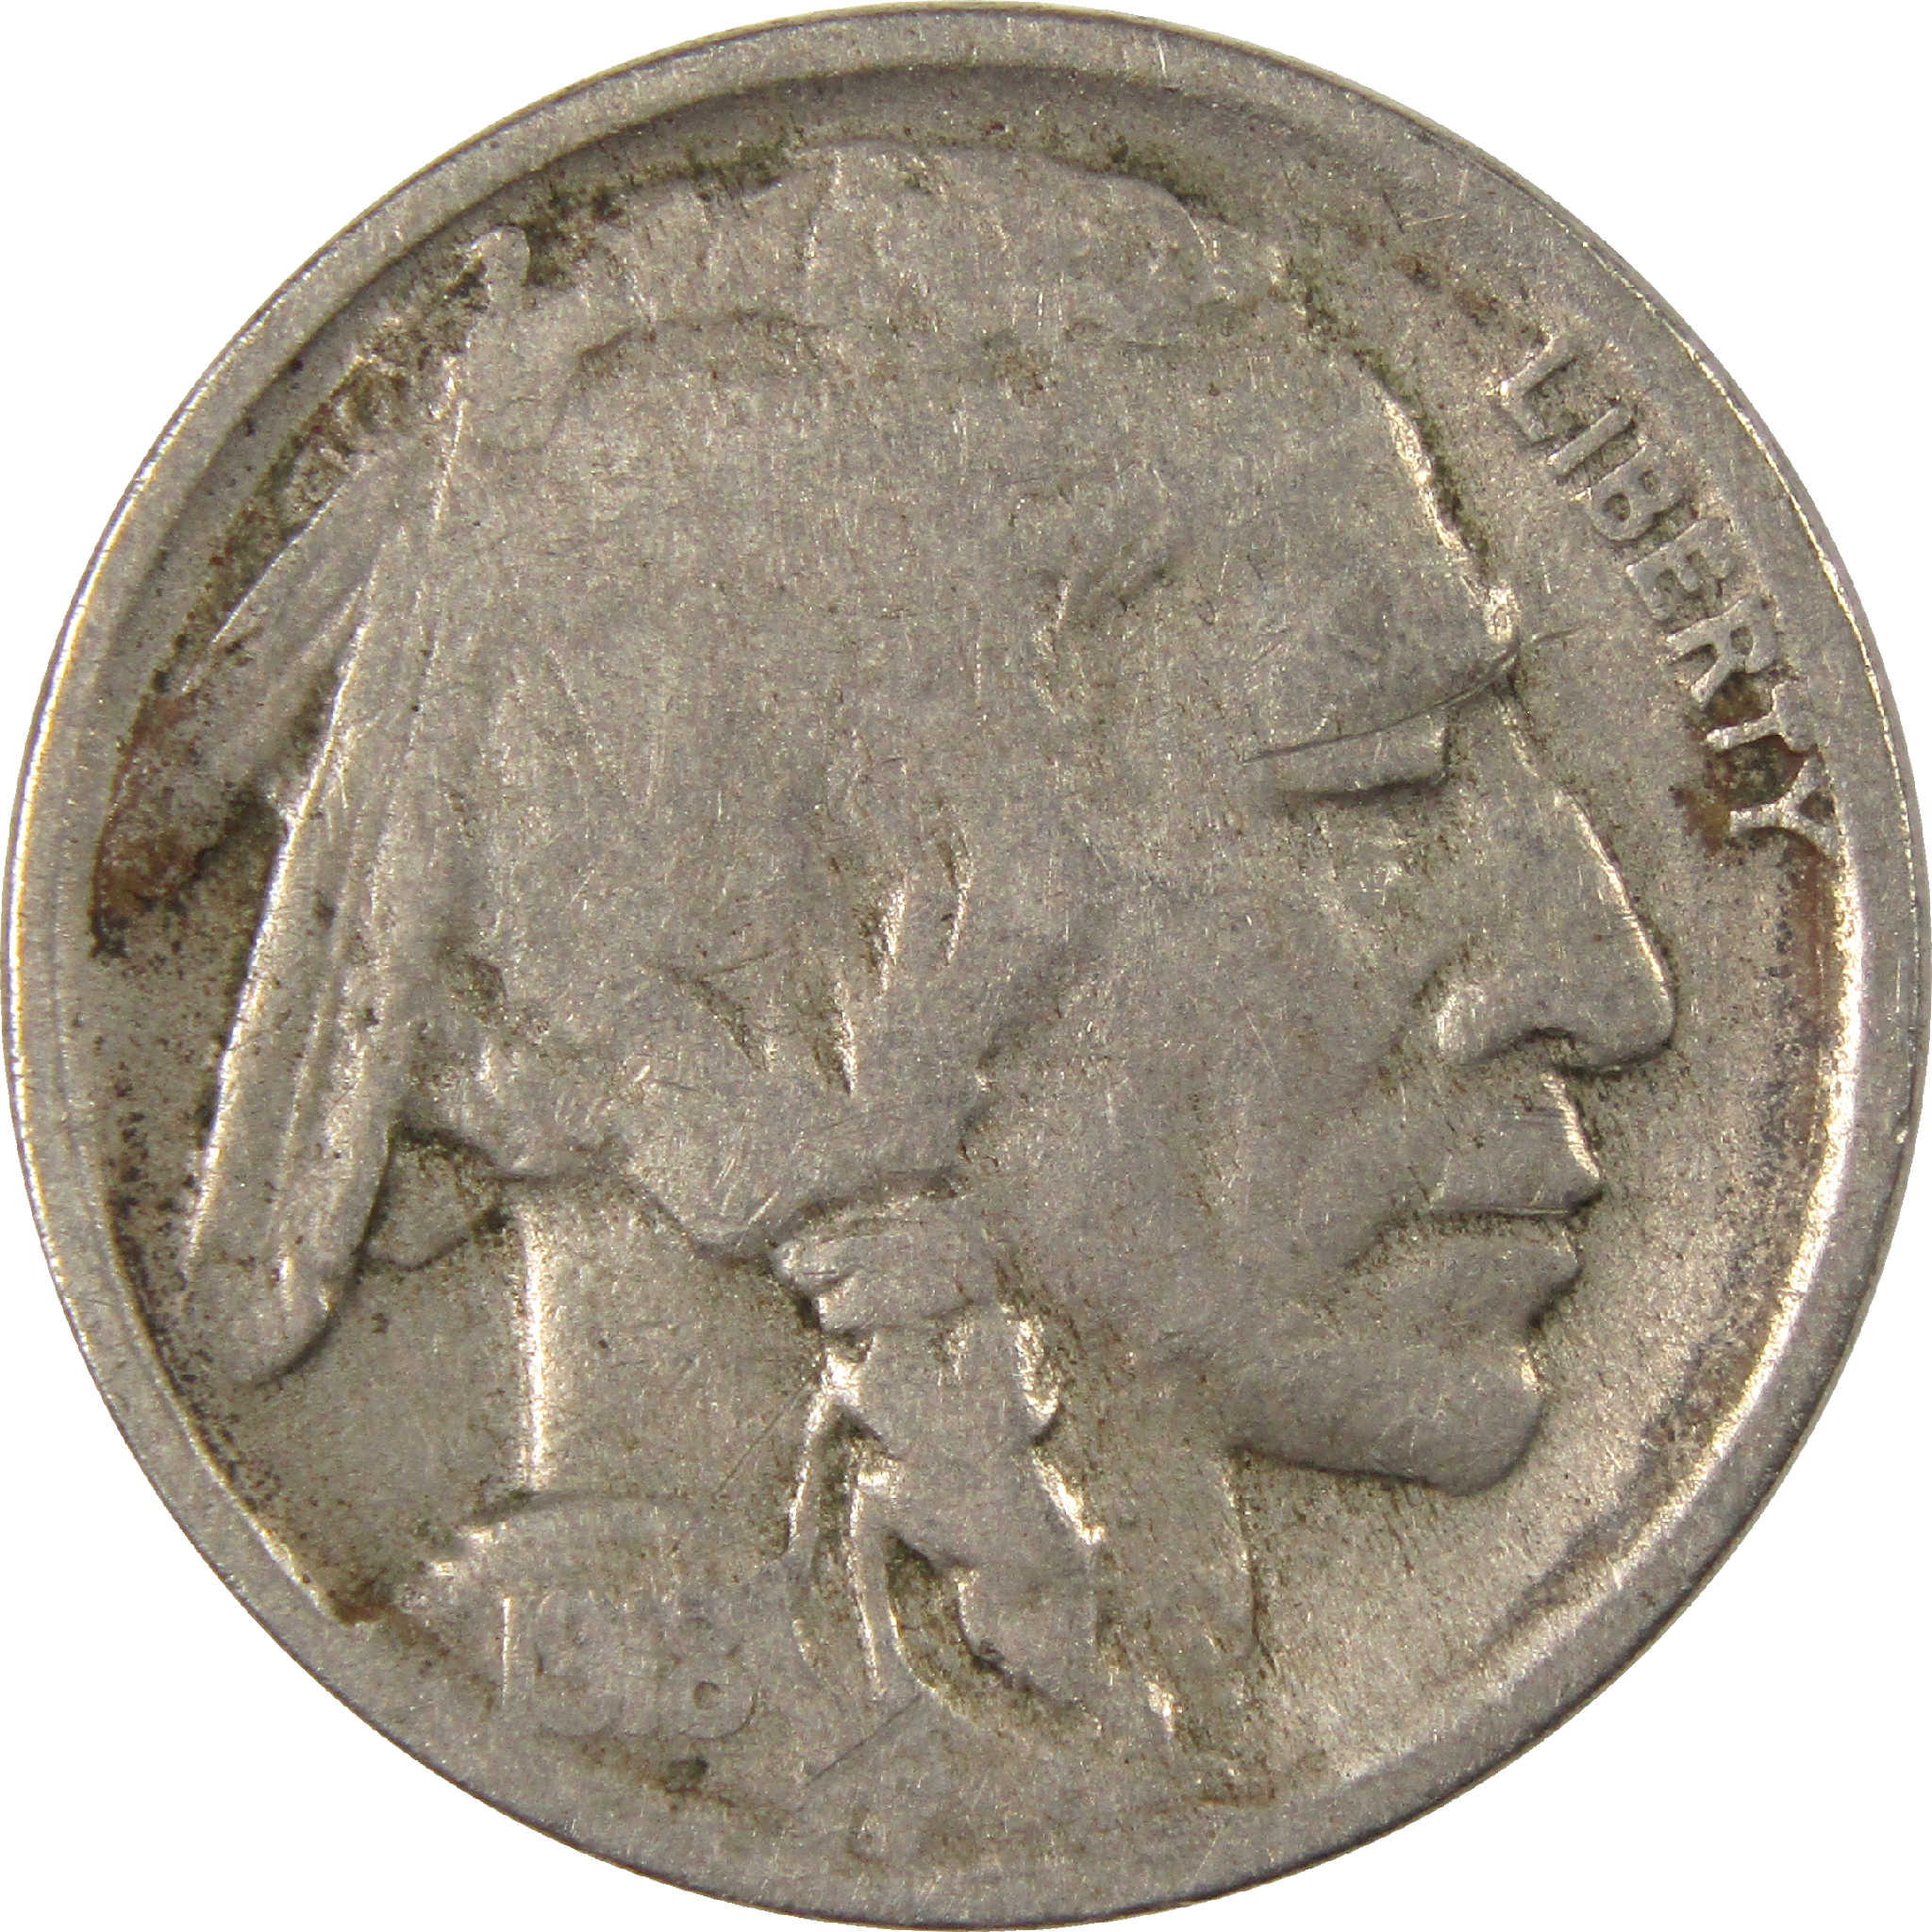 1918 D Indian Head Buffalo Nickel VG Very Good 5c Coin SKU:I11511